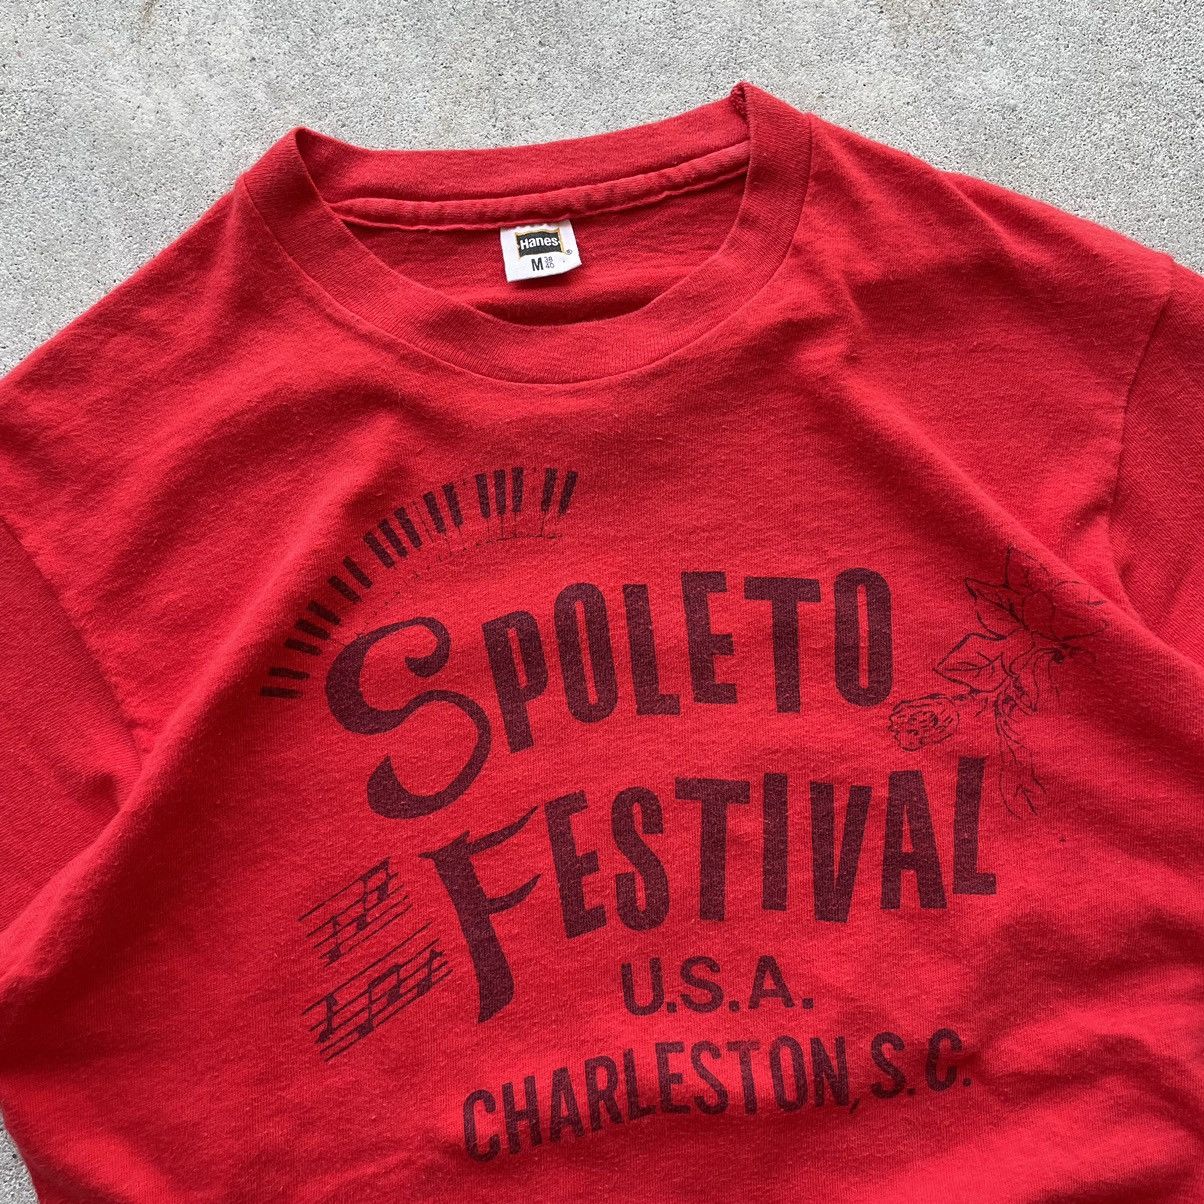 Vintage Vintage 1970’s Charleston Spoleto Festival Tee Size US M / EU 48-50 / 2 - 3 Thumbnail